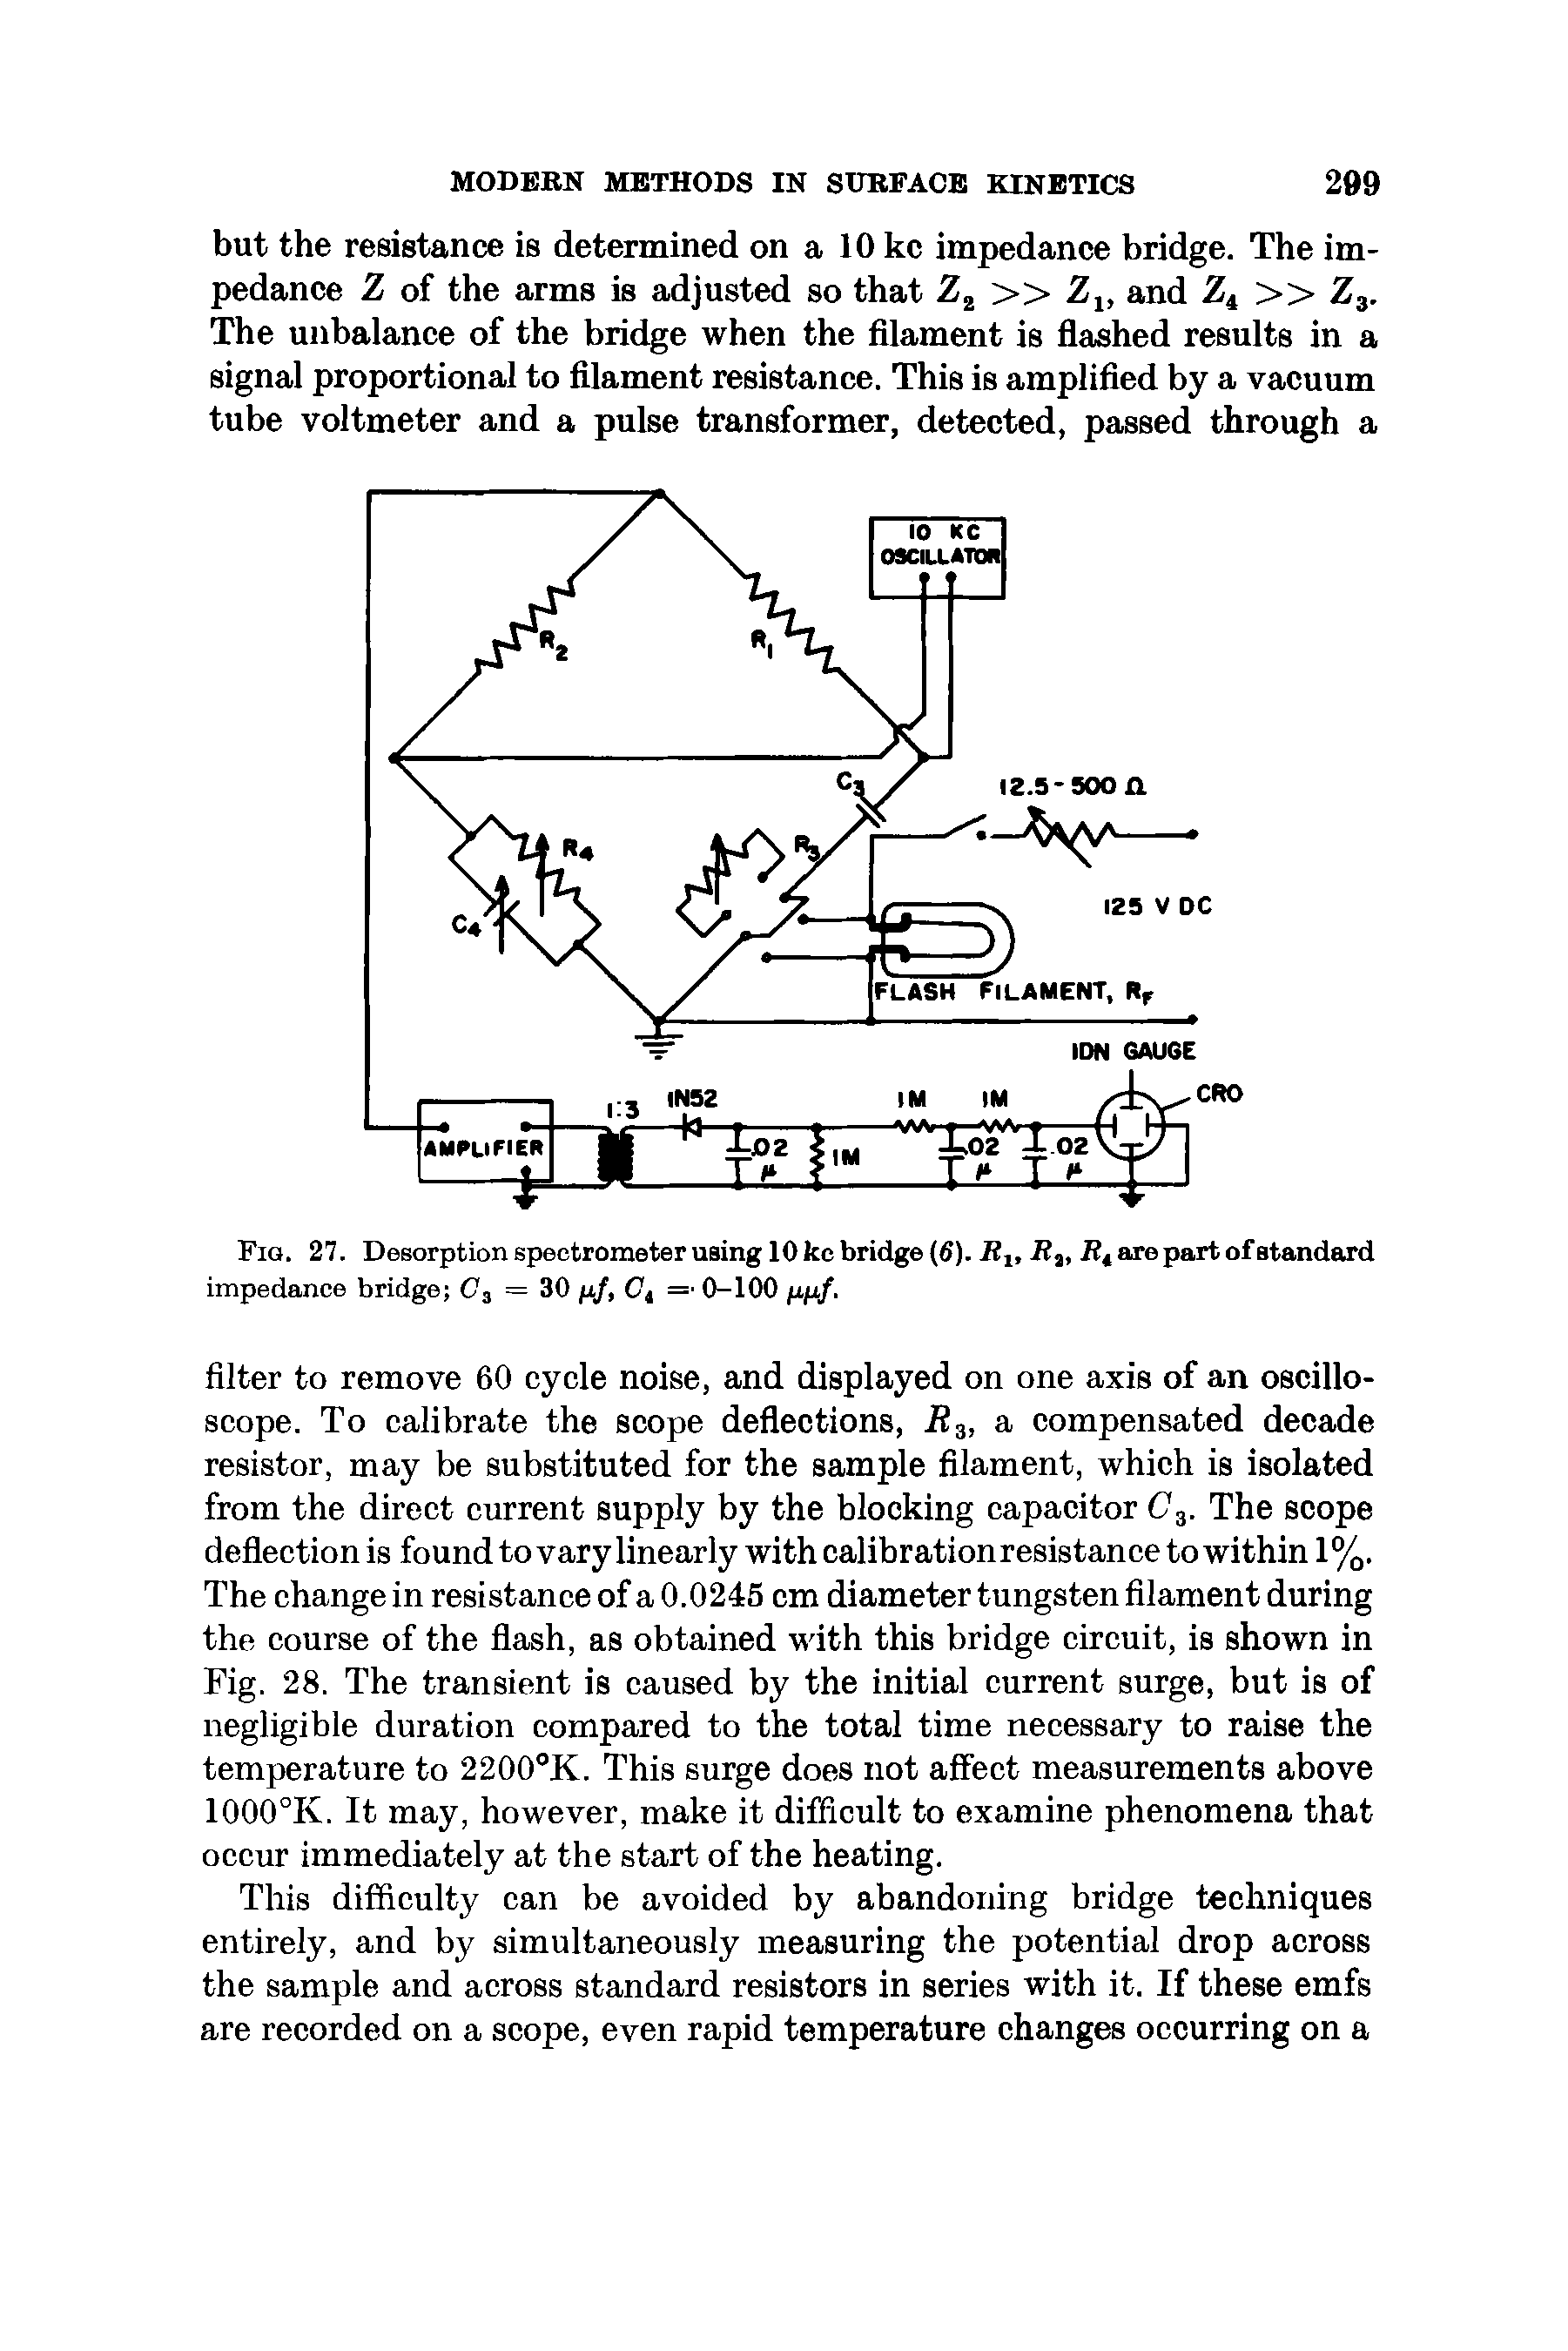 Fig. 27. Desorption spectrometer using 10 ke bridge (6). Rlt Rt, Rt are part of standard impedance bridge C = 30 p/, Ot = 0-100 pp/.